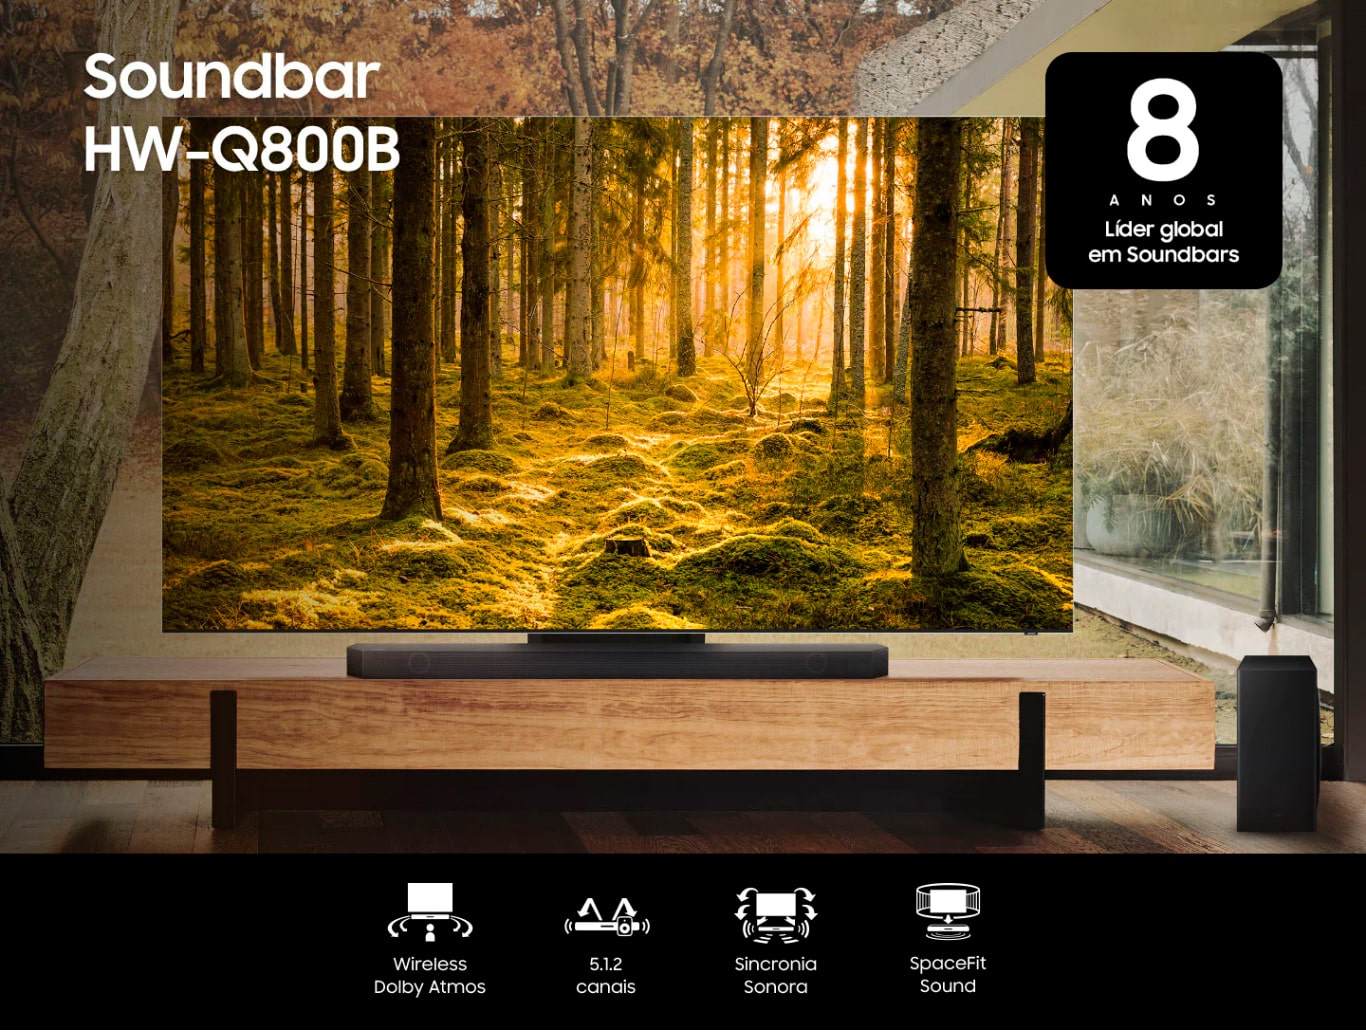 Soundbar Samsung HW-Q800B com 5.1.2 canais